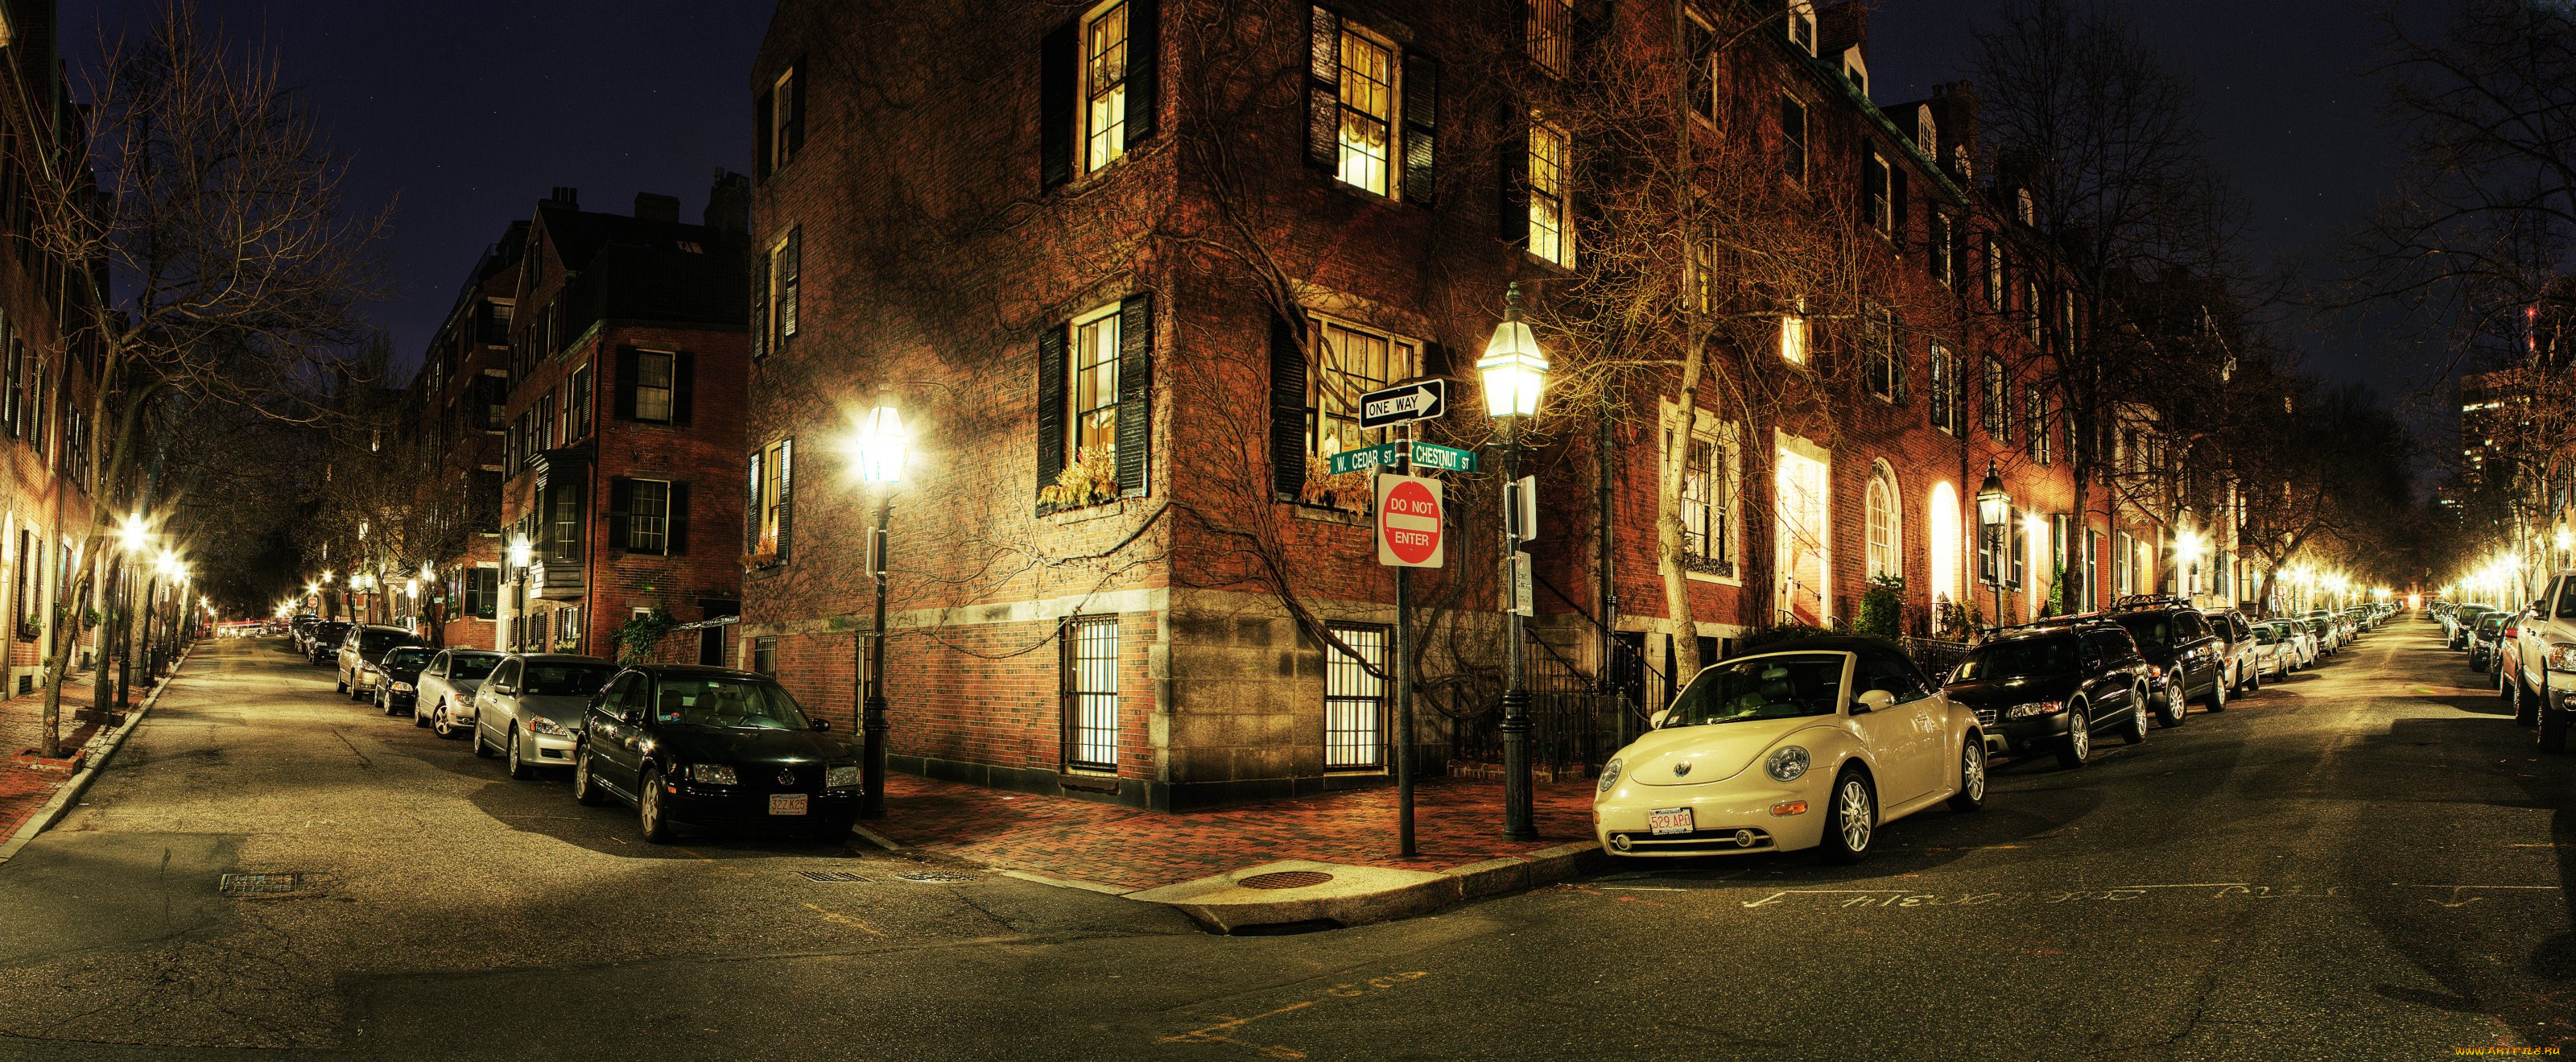 Street Boston ночной